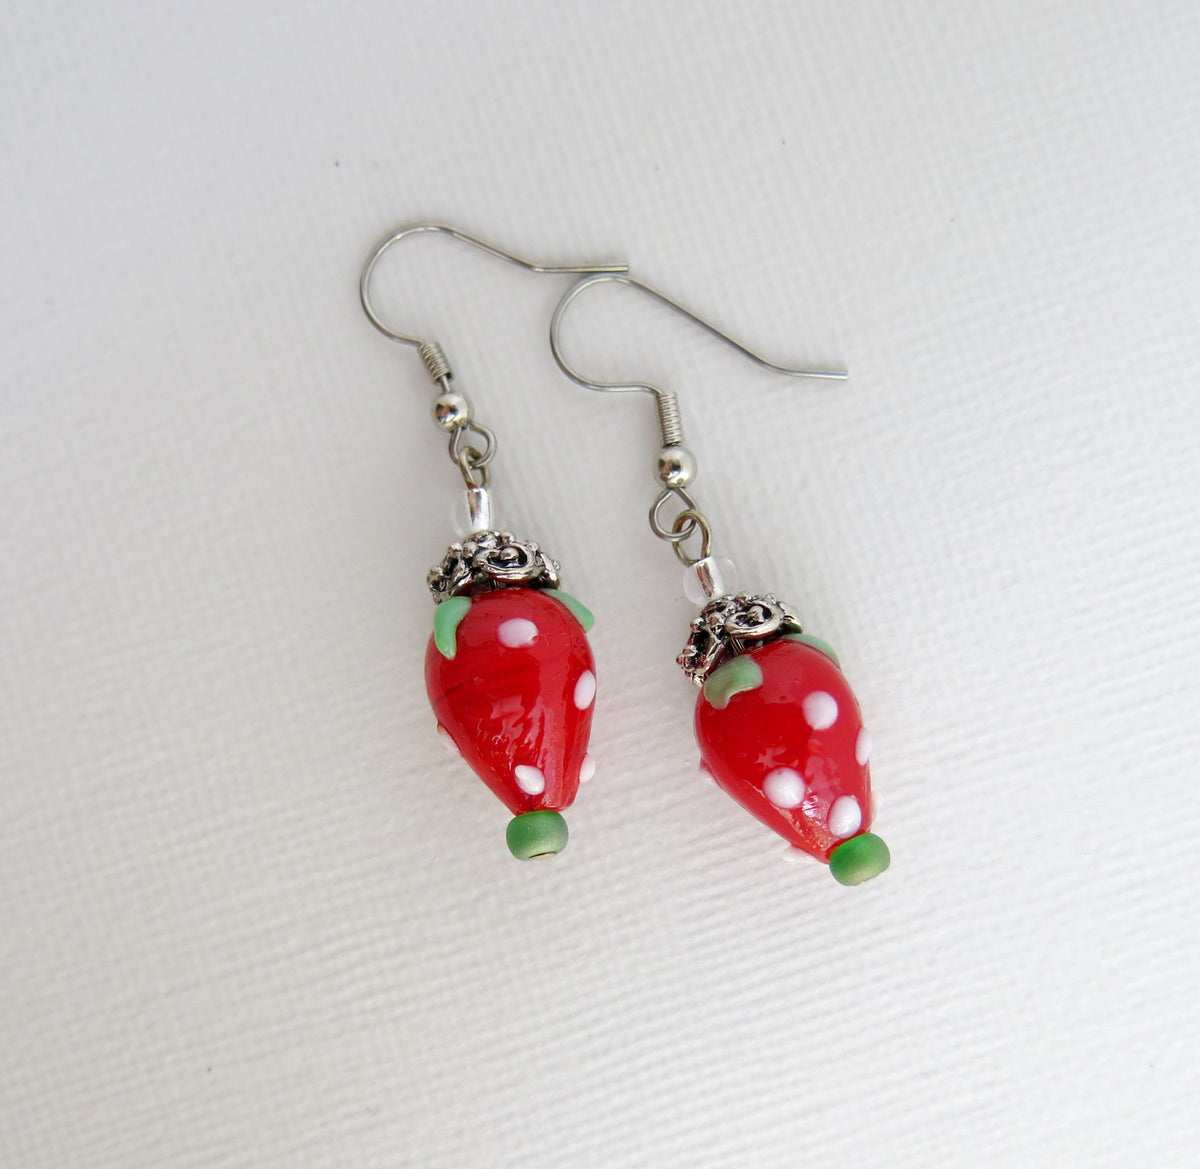 Strawberry Lampwork Glass Dangle Earrings - Strawberry charm earrings ...